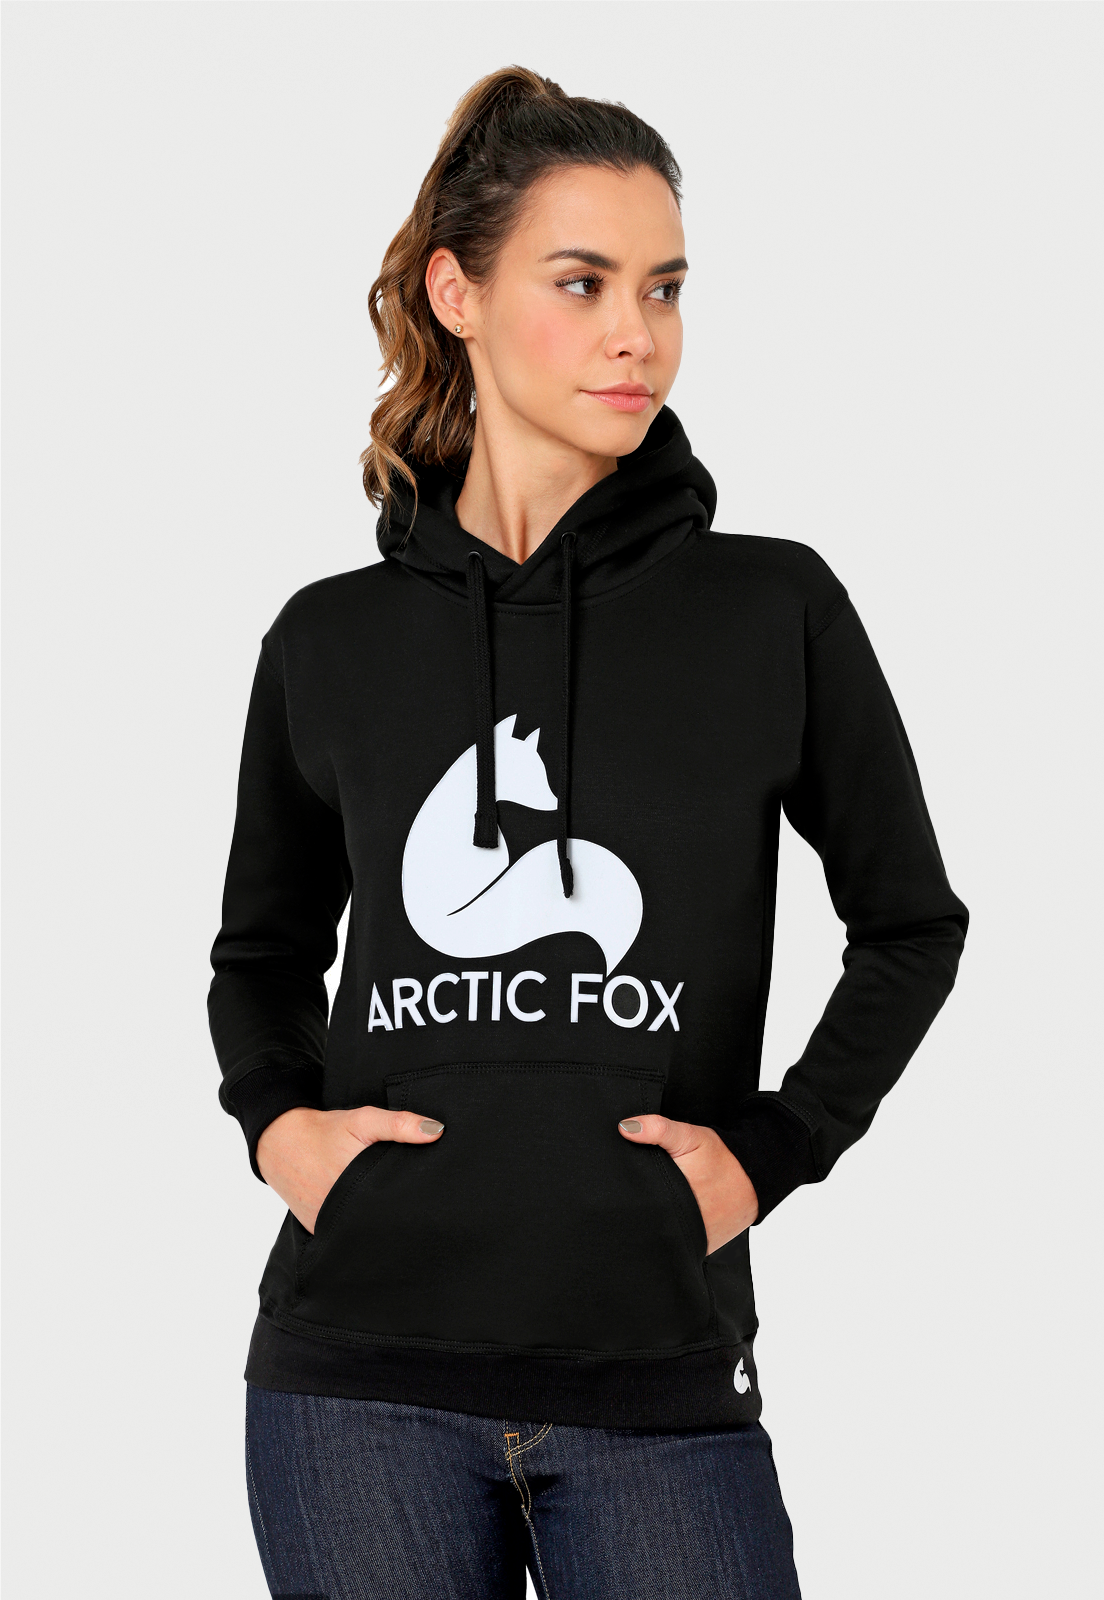 mujer usando un buzo negro estampado en el pecho con el logo de arctic Fox